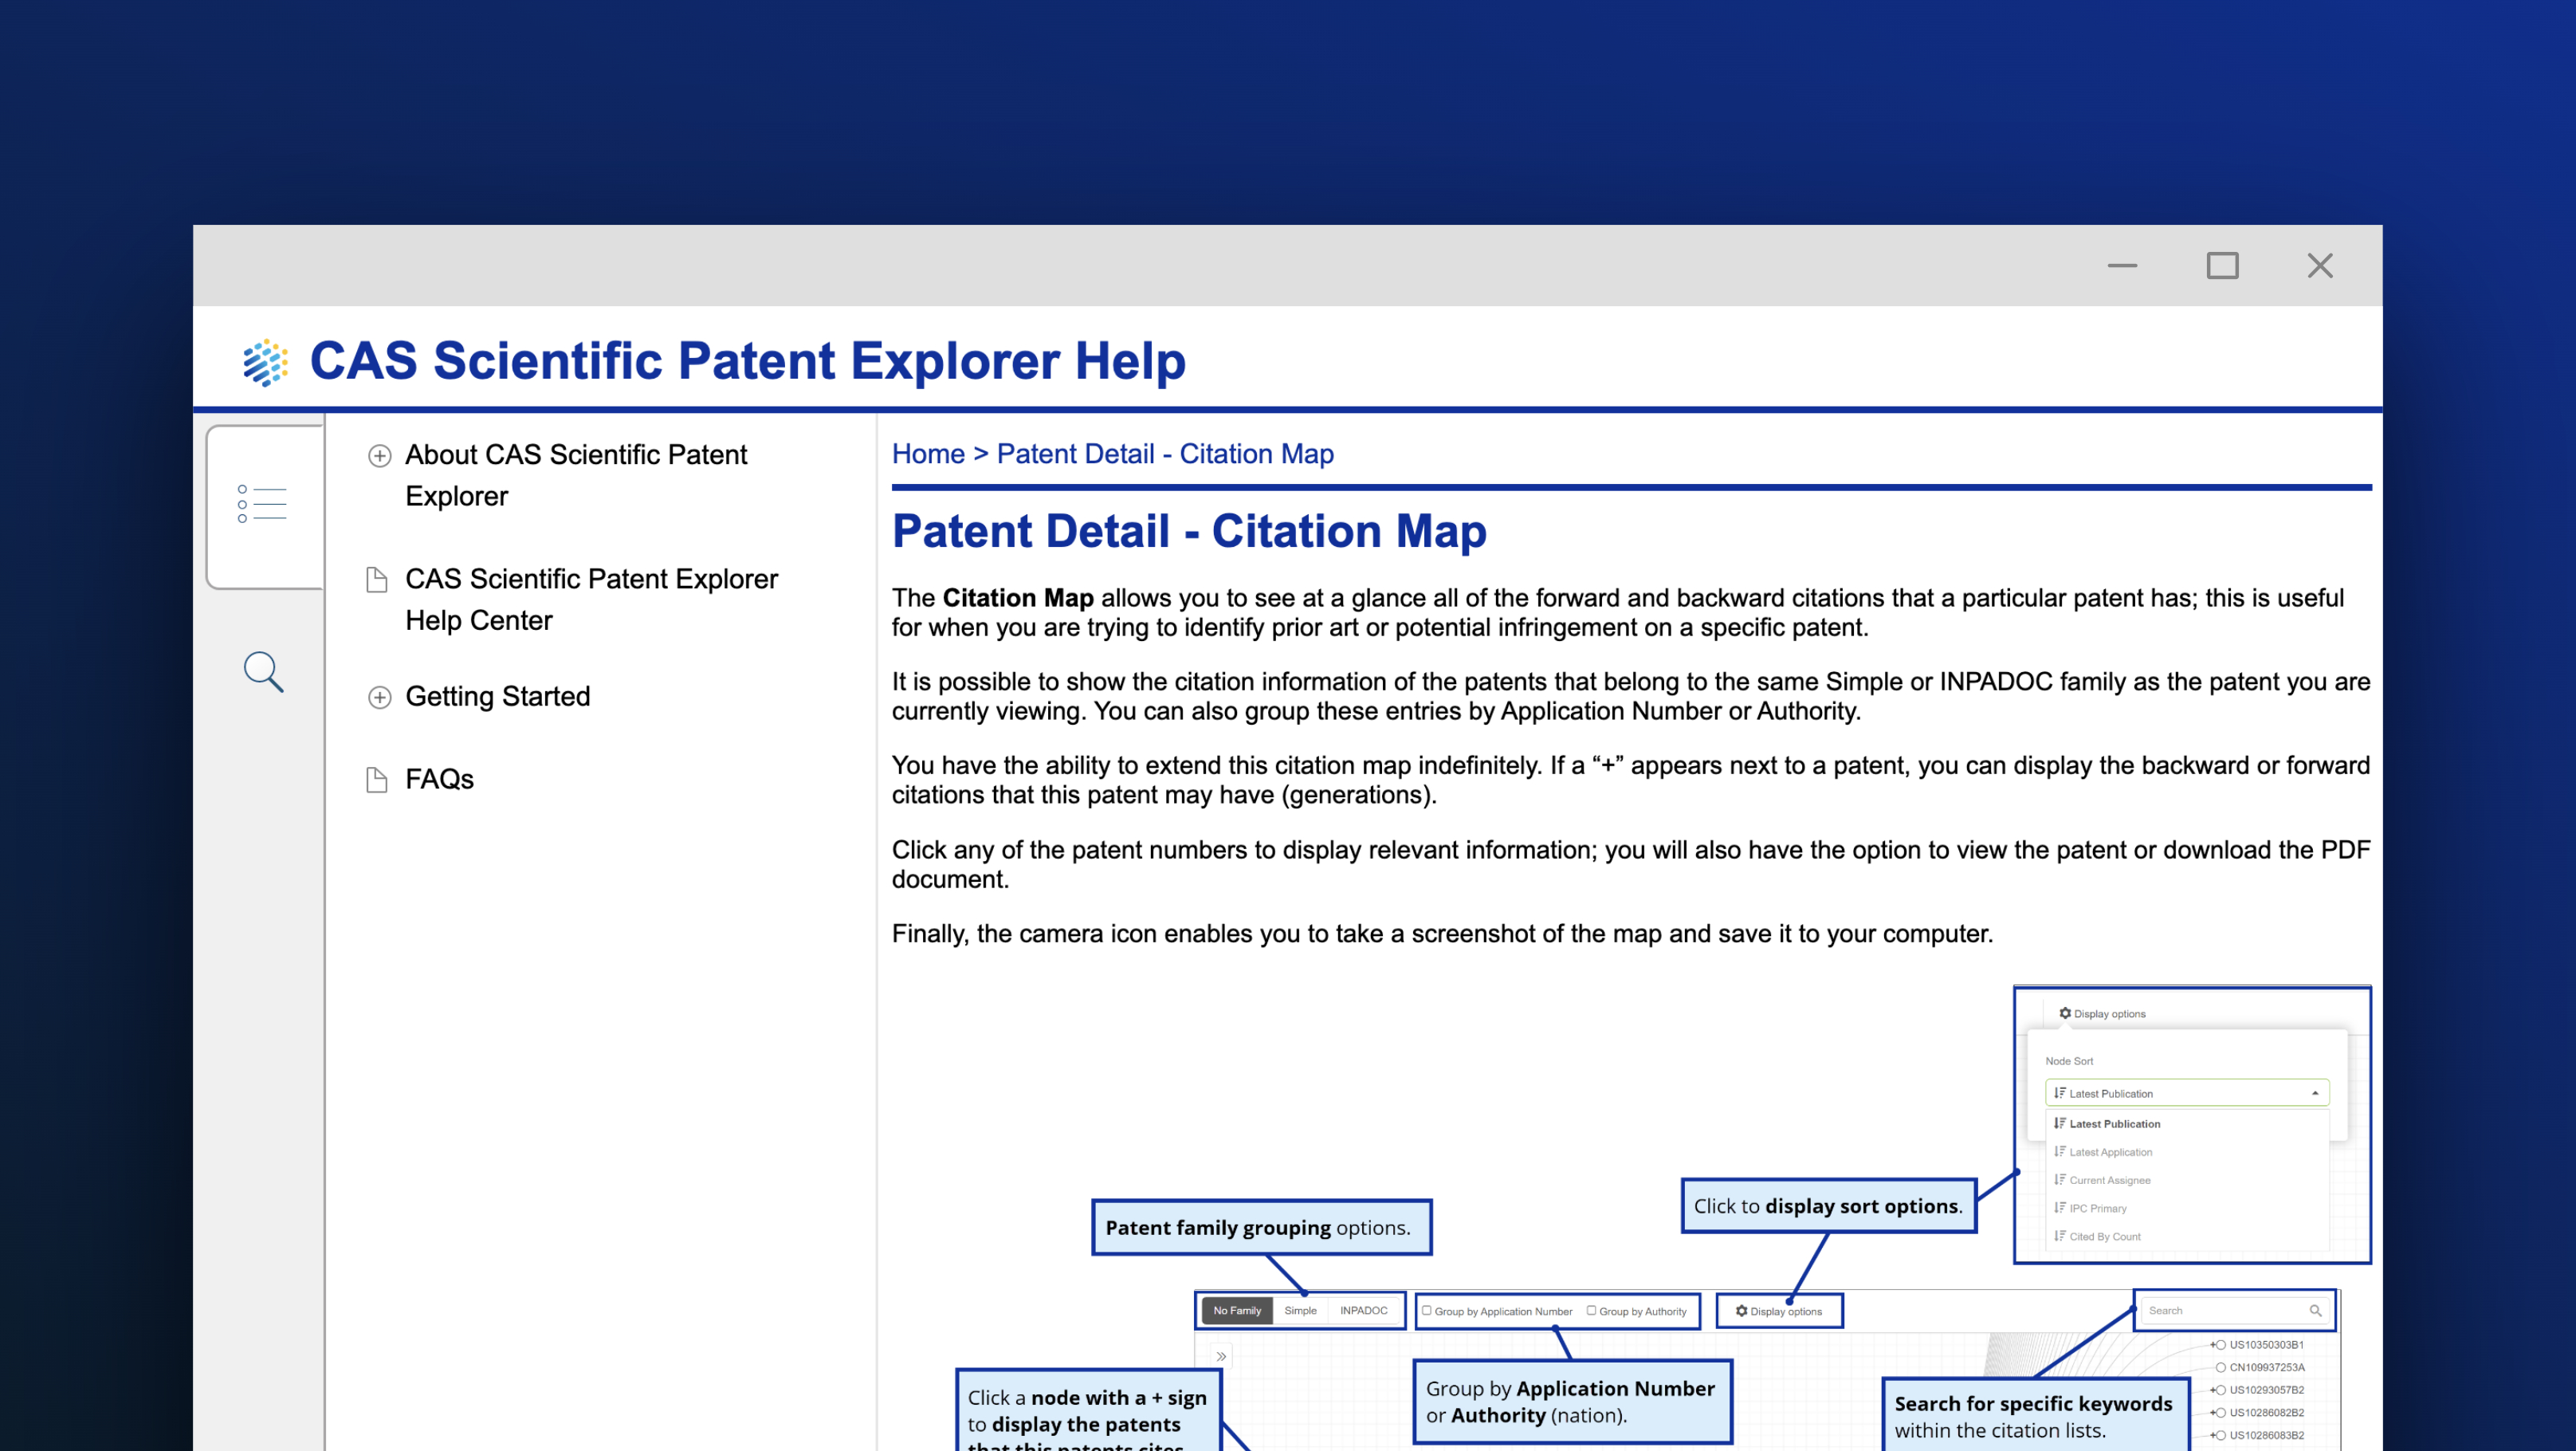 Patent detail citation map